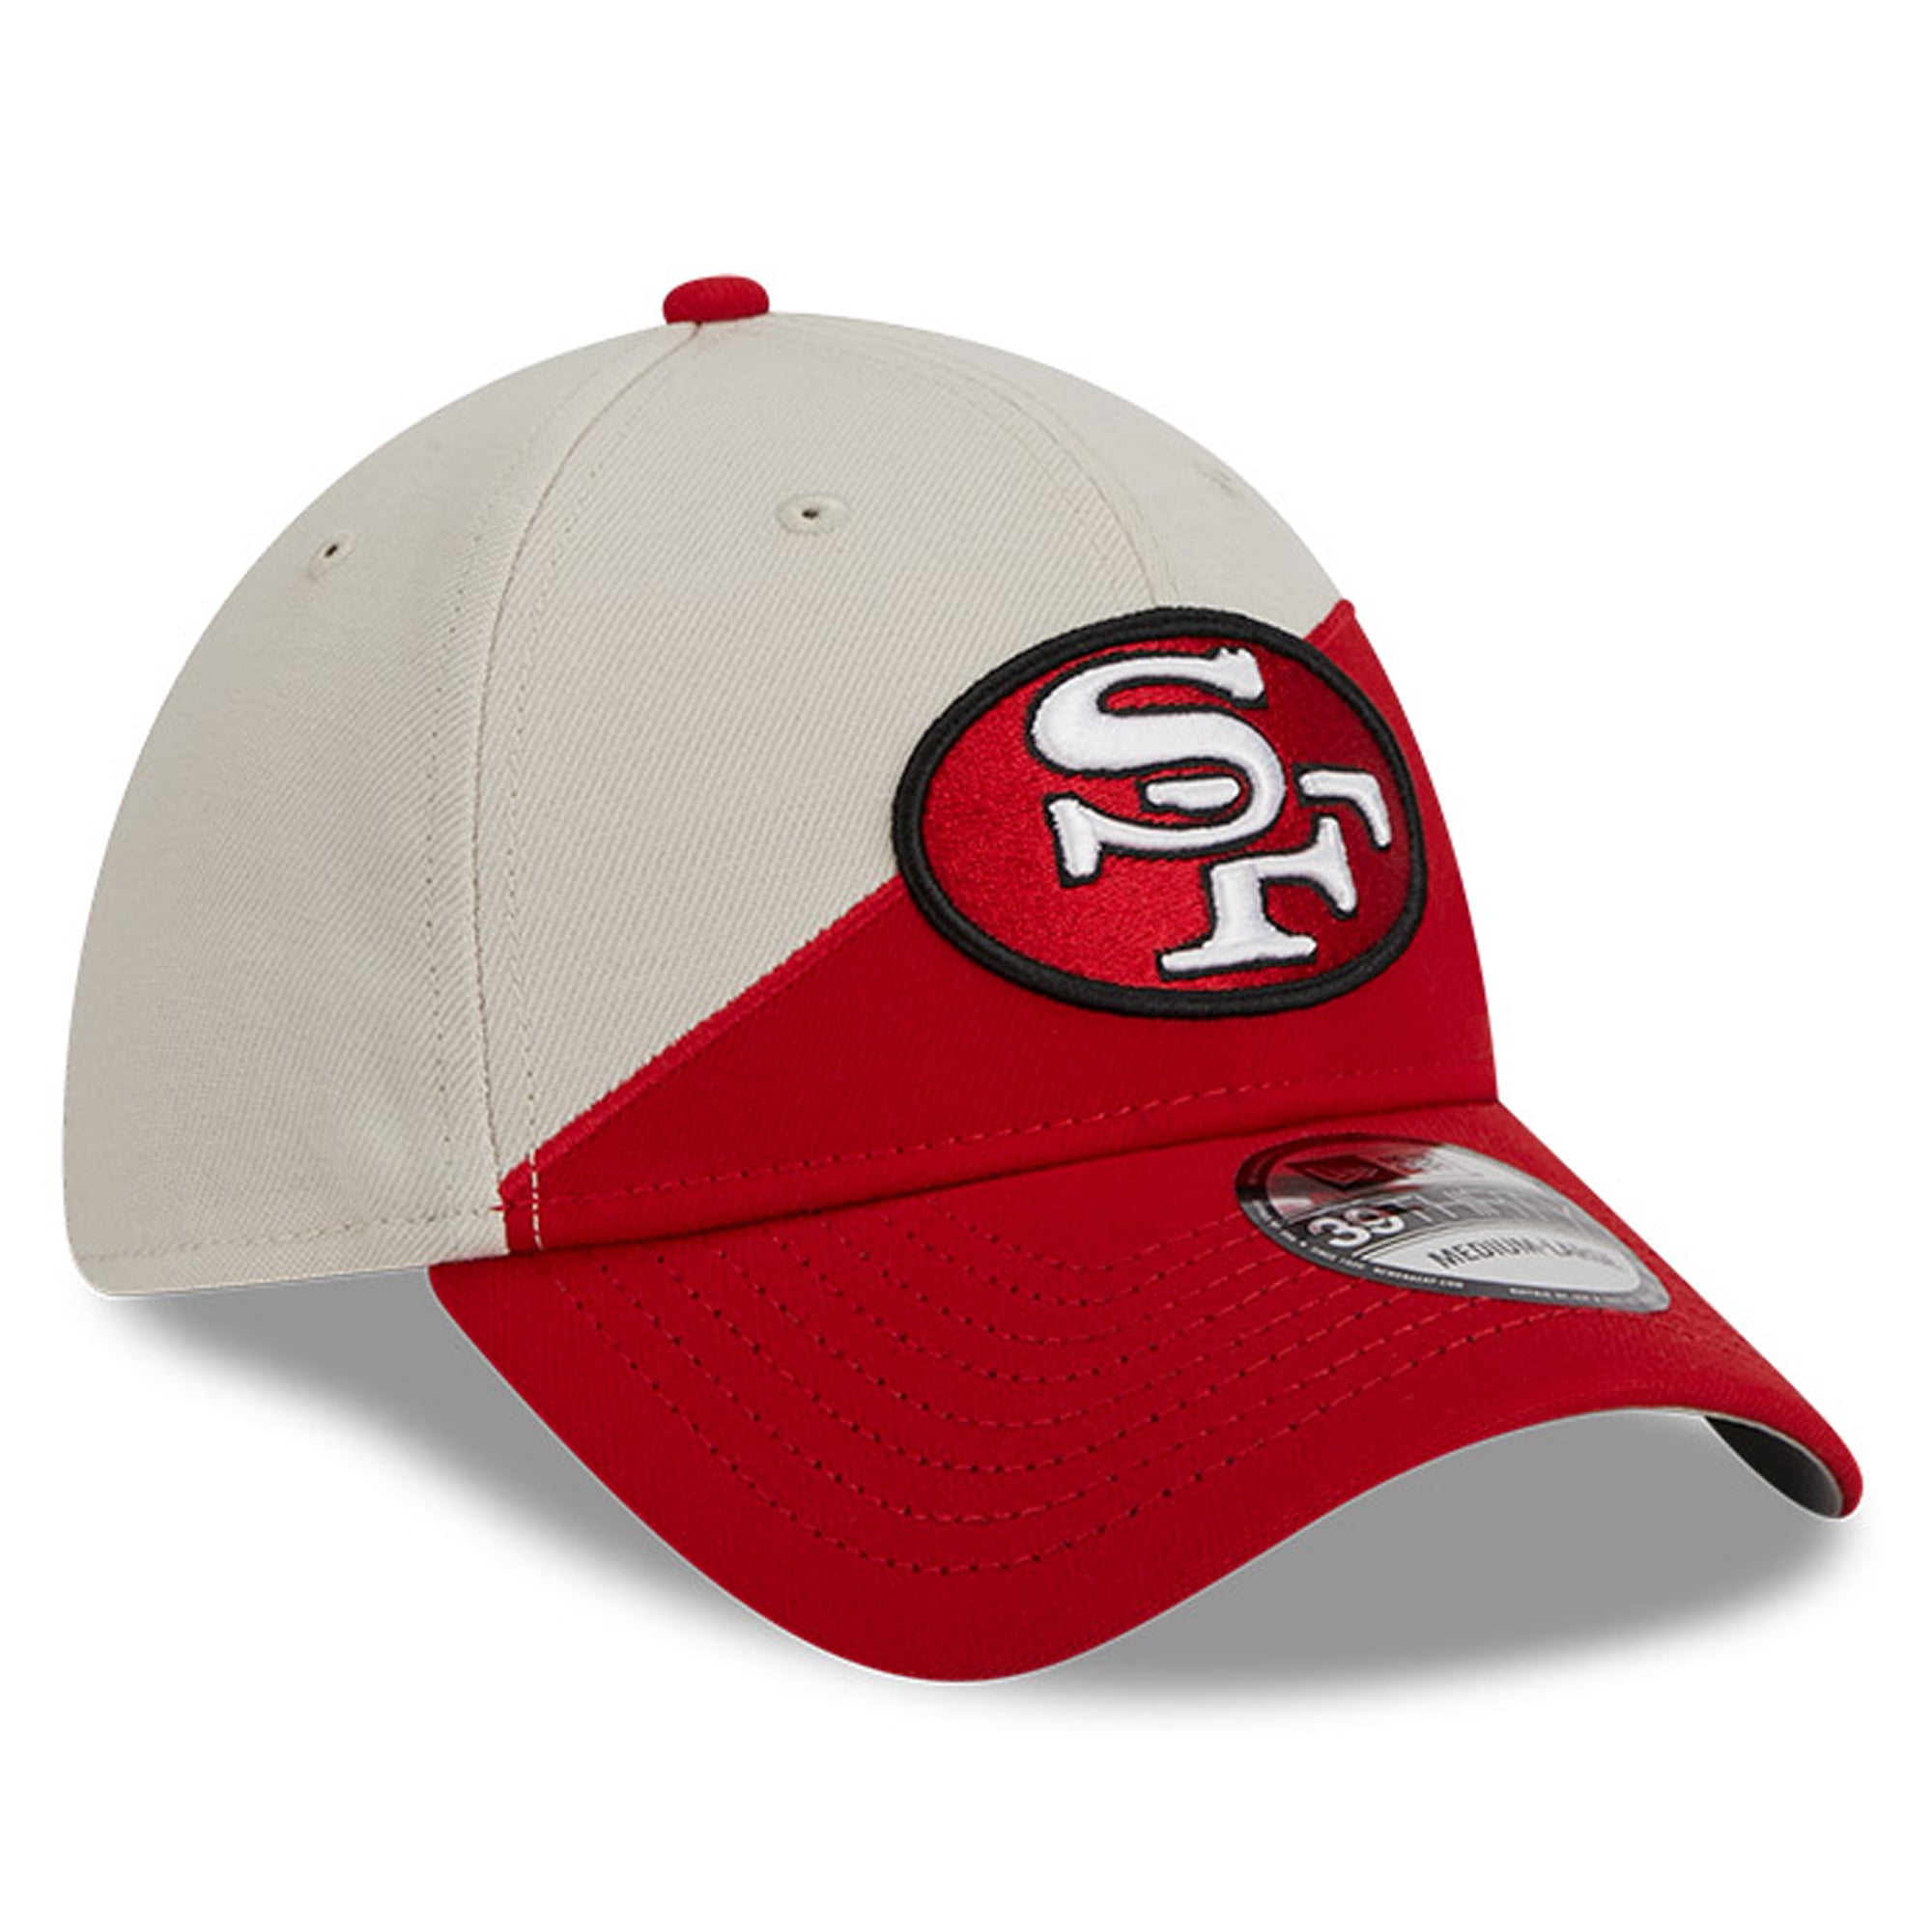 men's 49ers hat